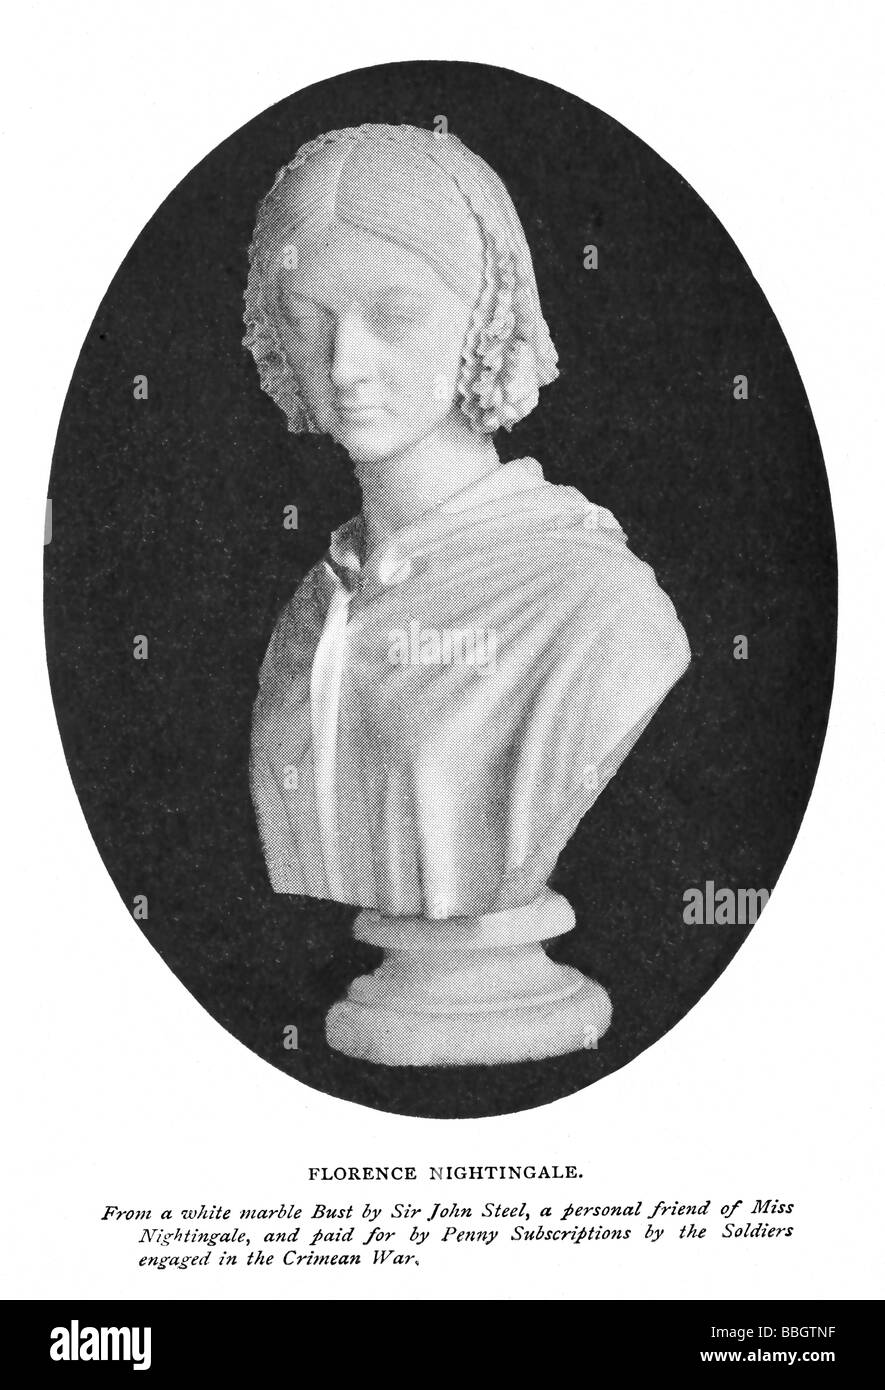 Busto de mármol de Florence Nightingale pagados por penny suscripciones por parte de los soldados que participan en la guerra de Crimea. Foto de stock